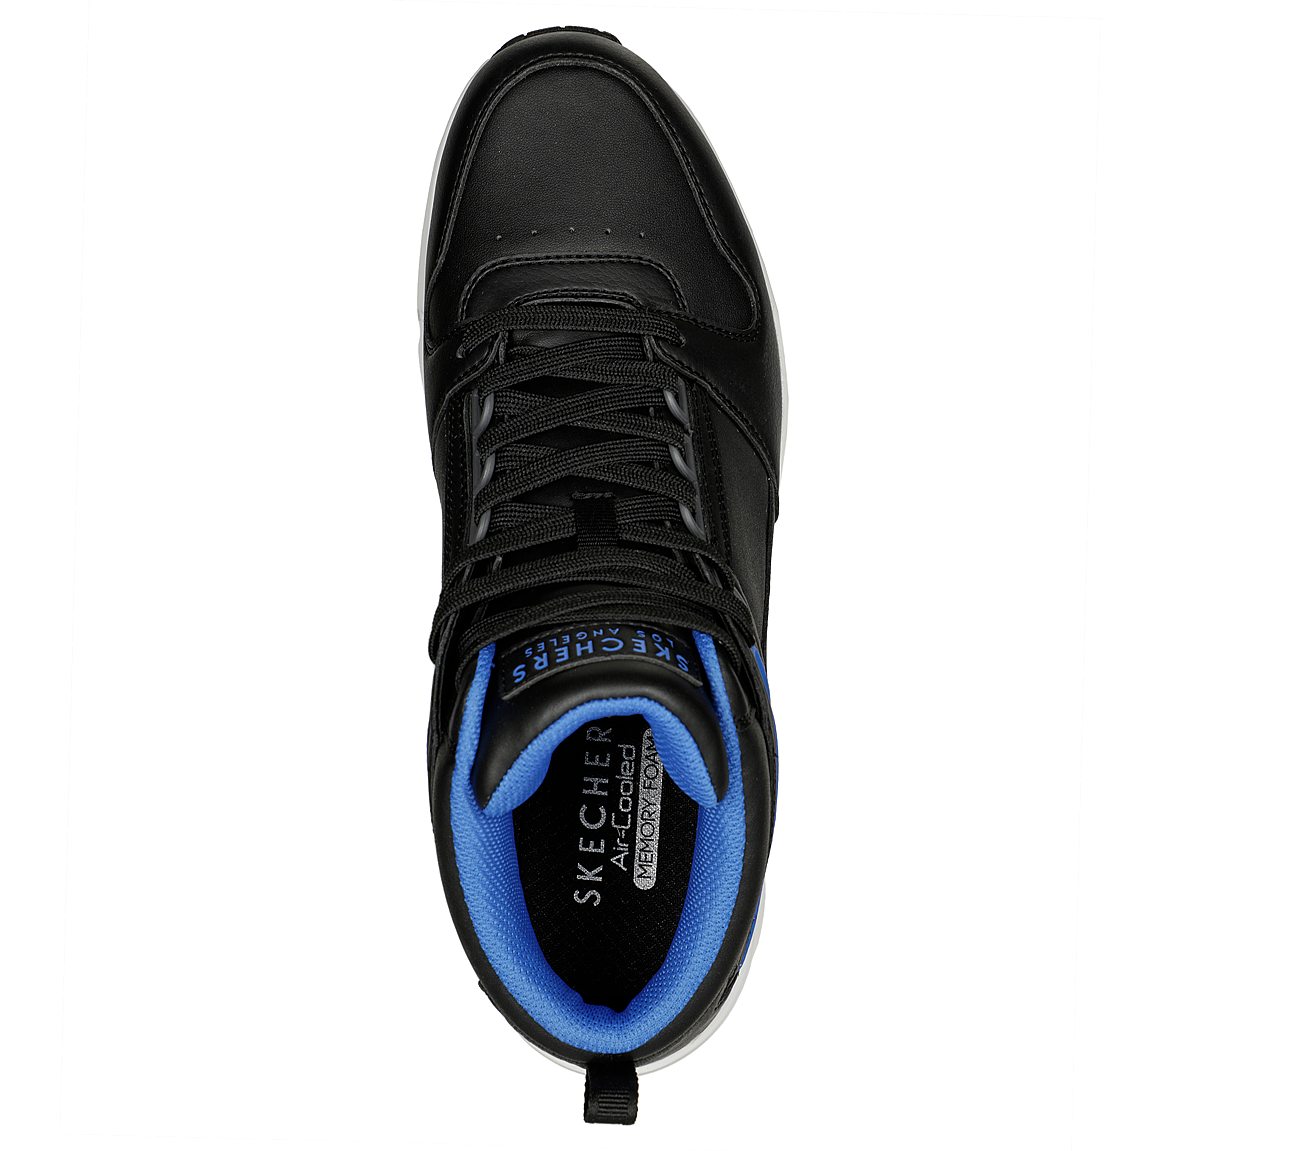 UNO - KEEP CLOSE, BLACK/BLUE Footwear Top View